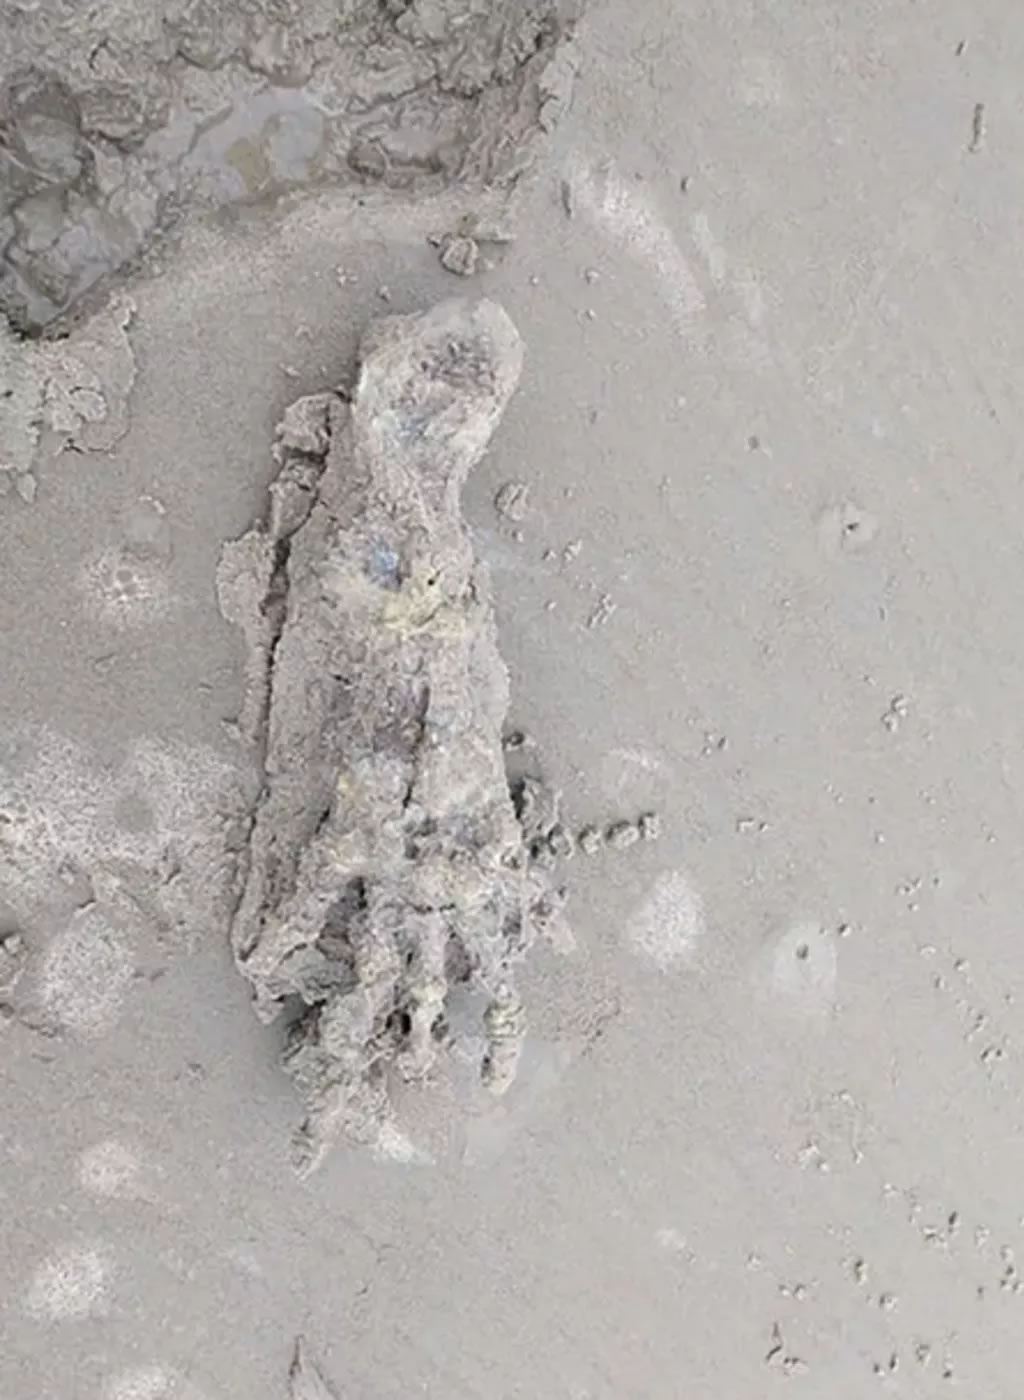 巴西海滩惊现一只巨大的“外星人”手骨